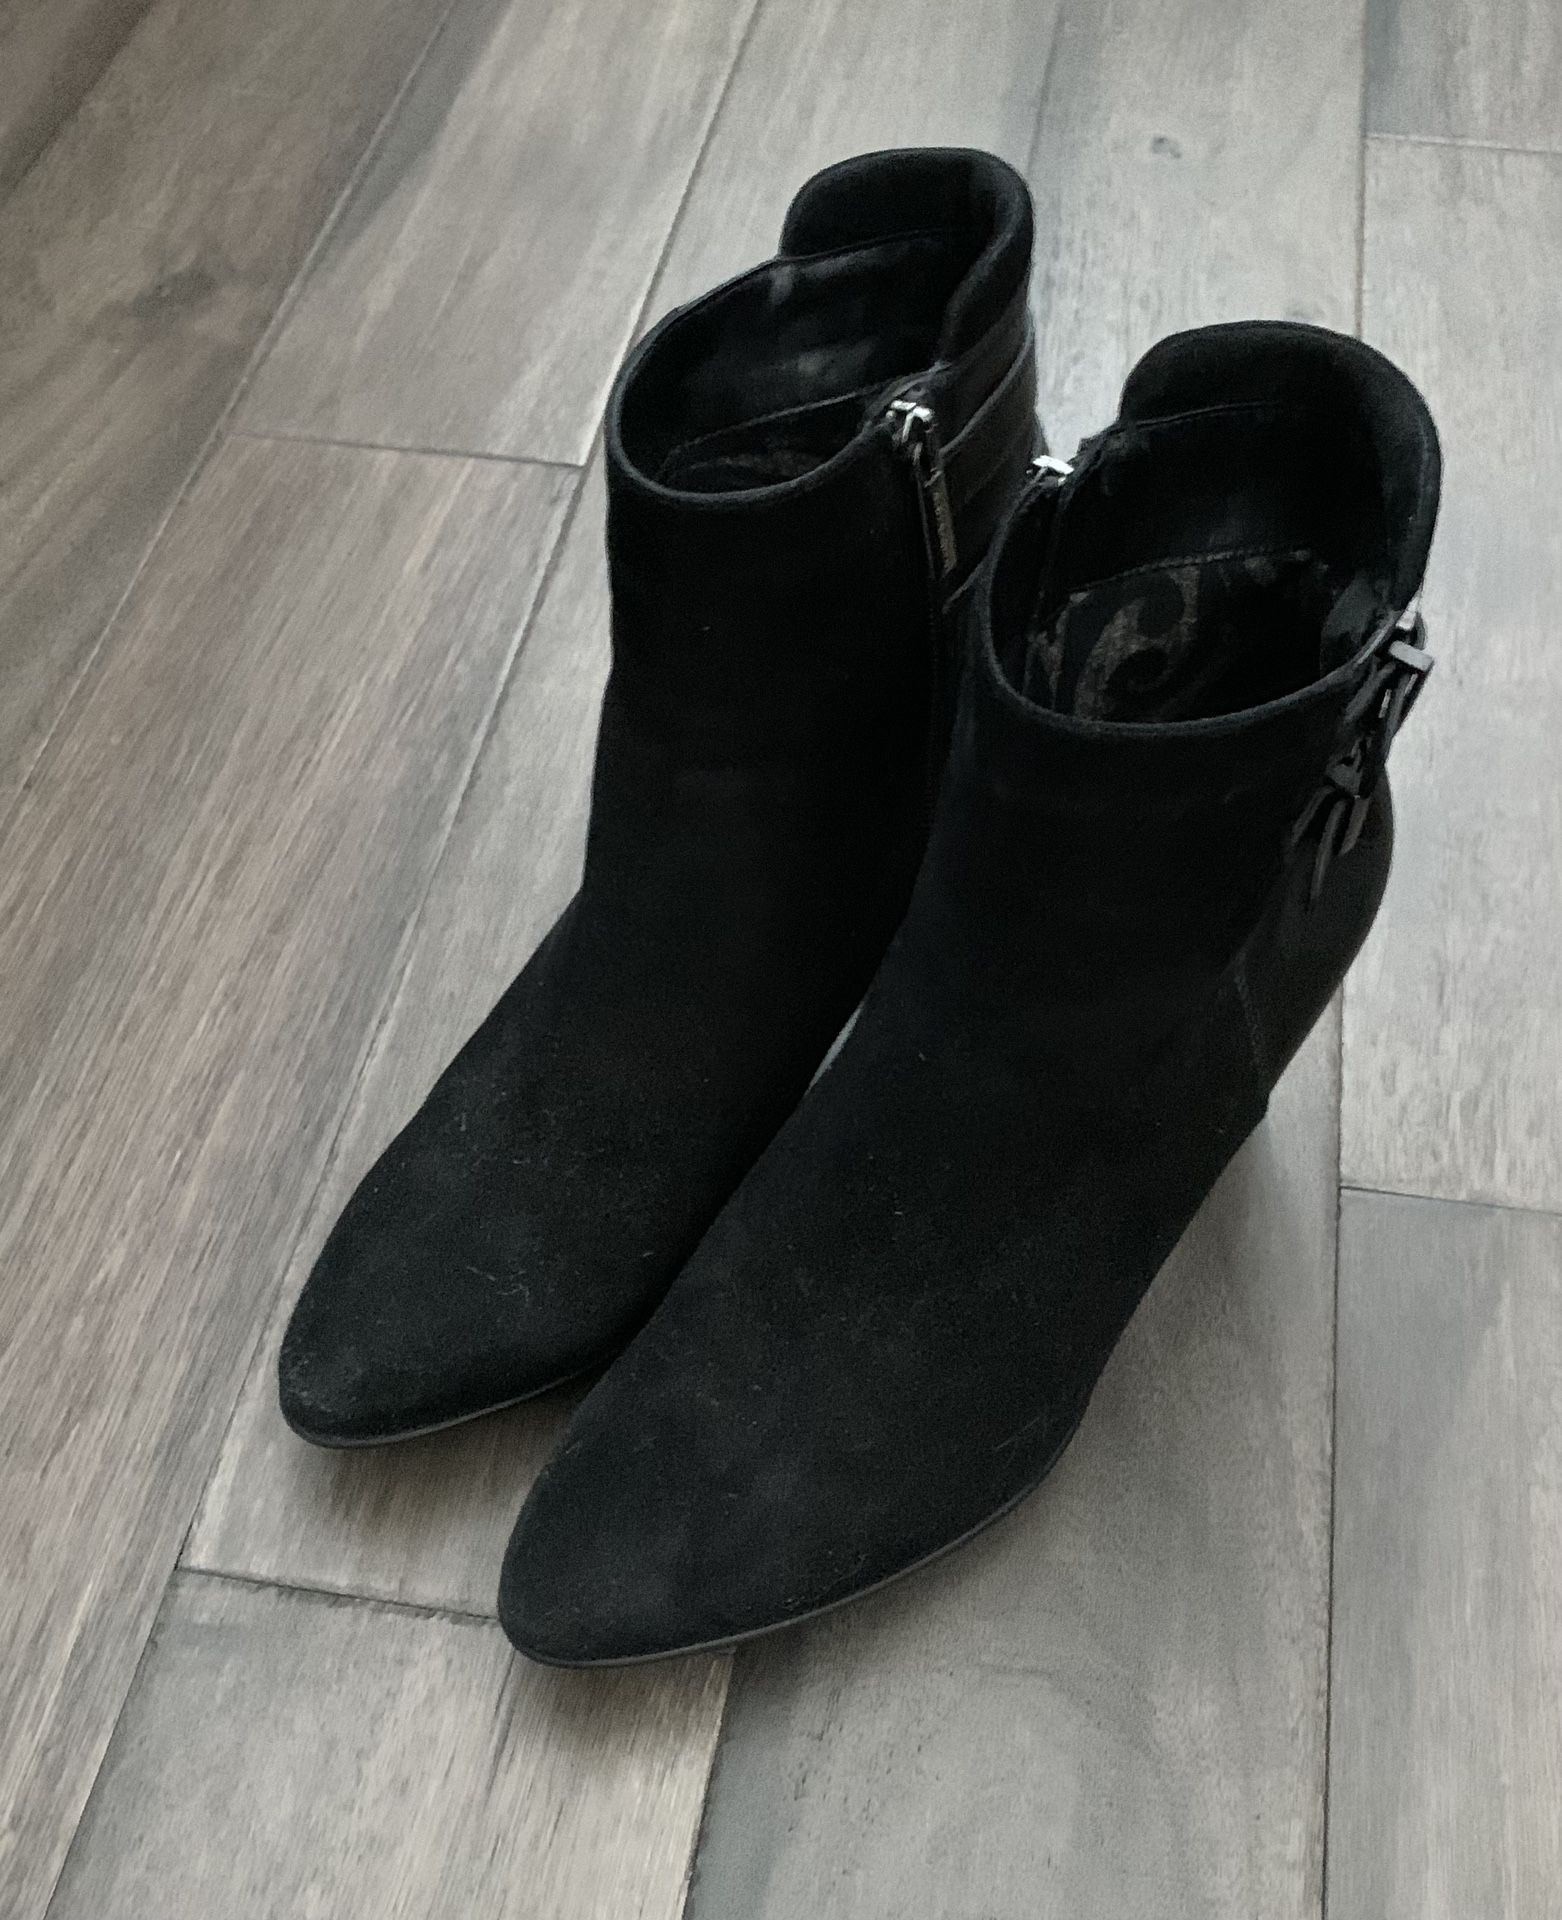 Aquatalia Boots - Like New